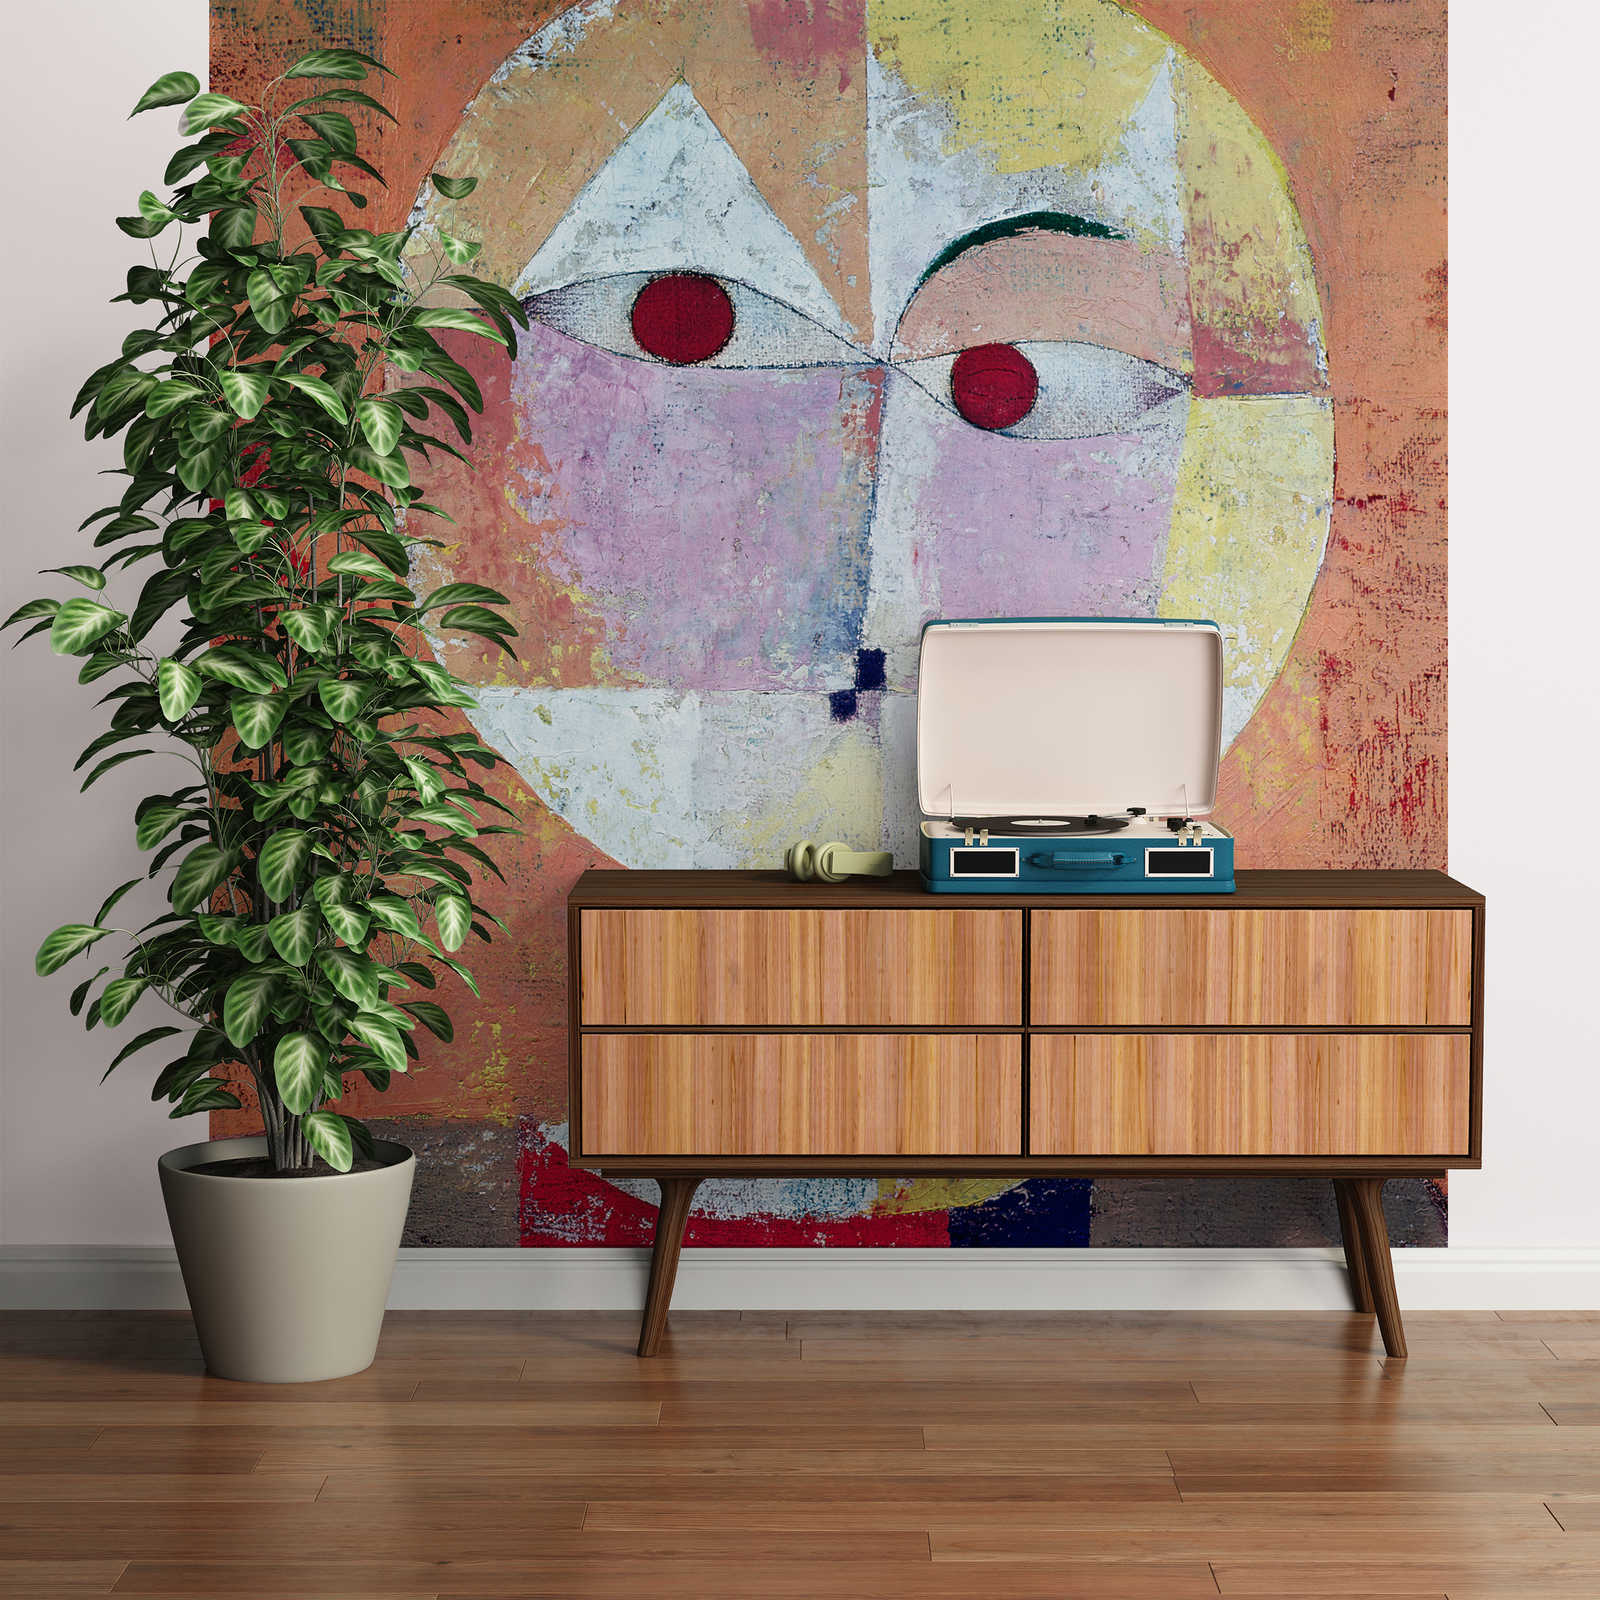             Mural "Senecio" de Paul Klee
        